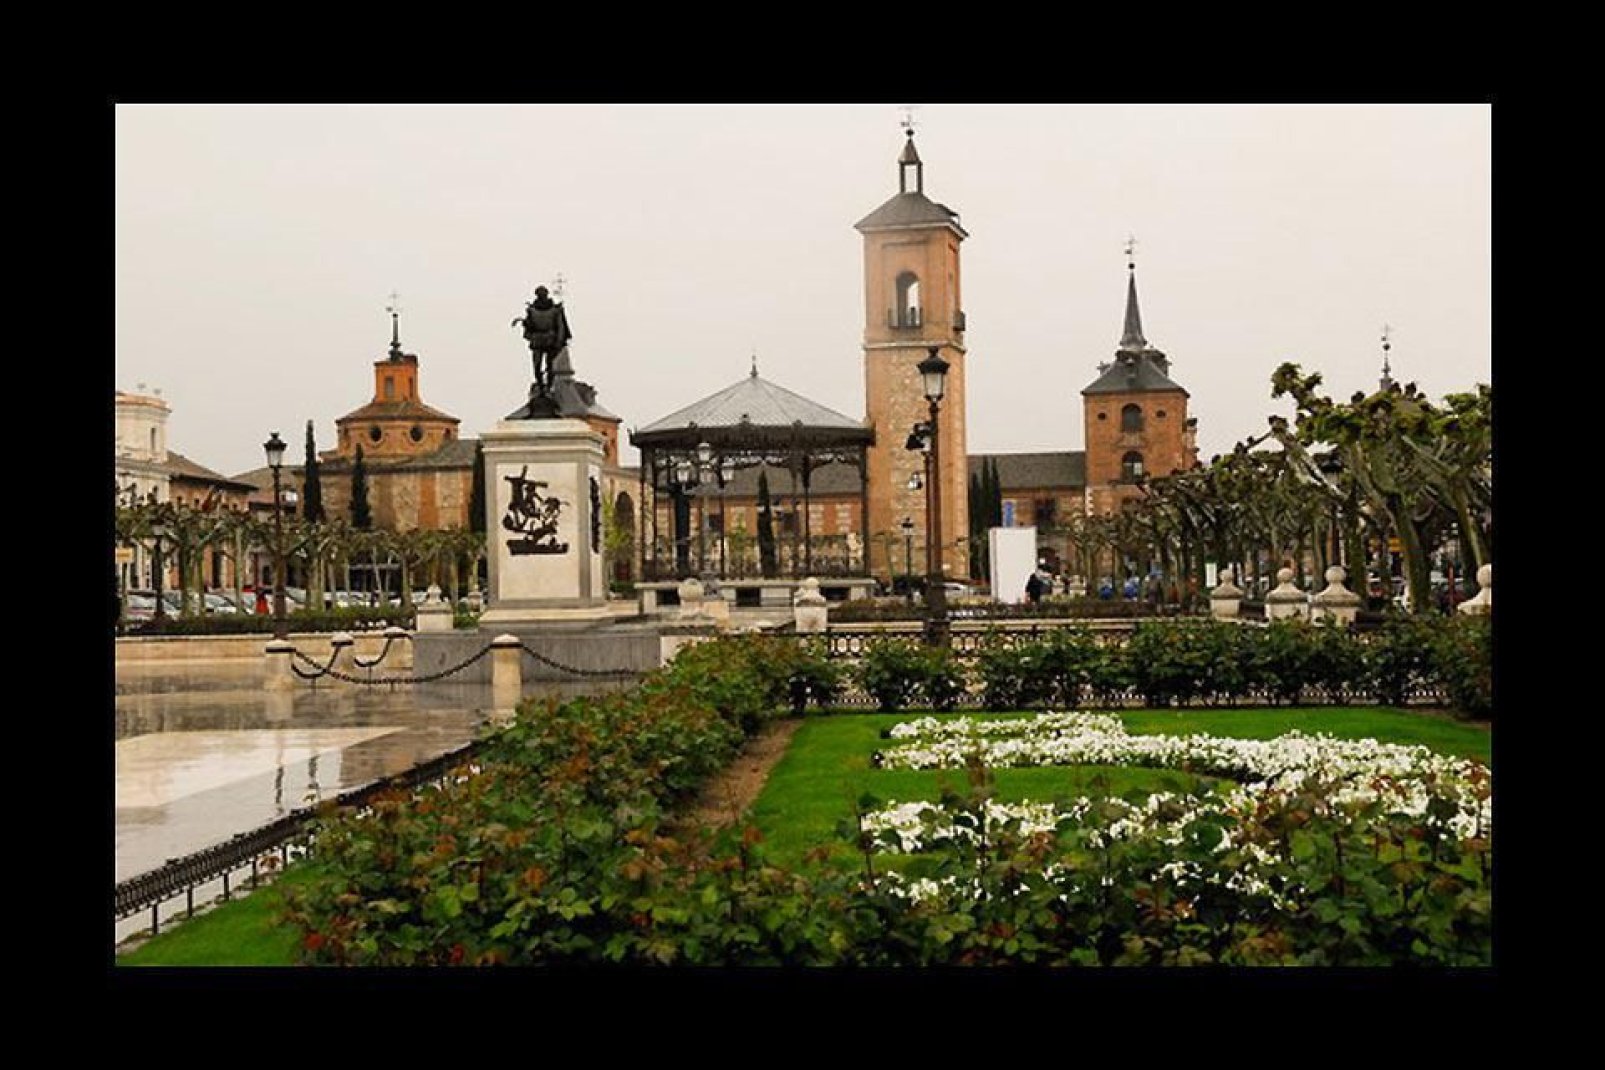 Alcalá de Henares war die erste Universitätsstadt der Welt und der Geburtsort von Miguel de Cervantes.